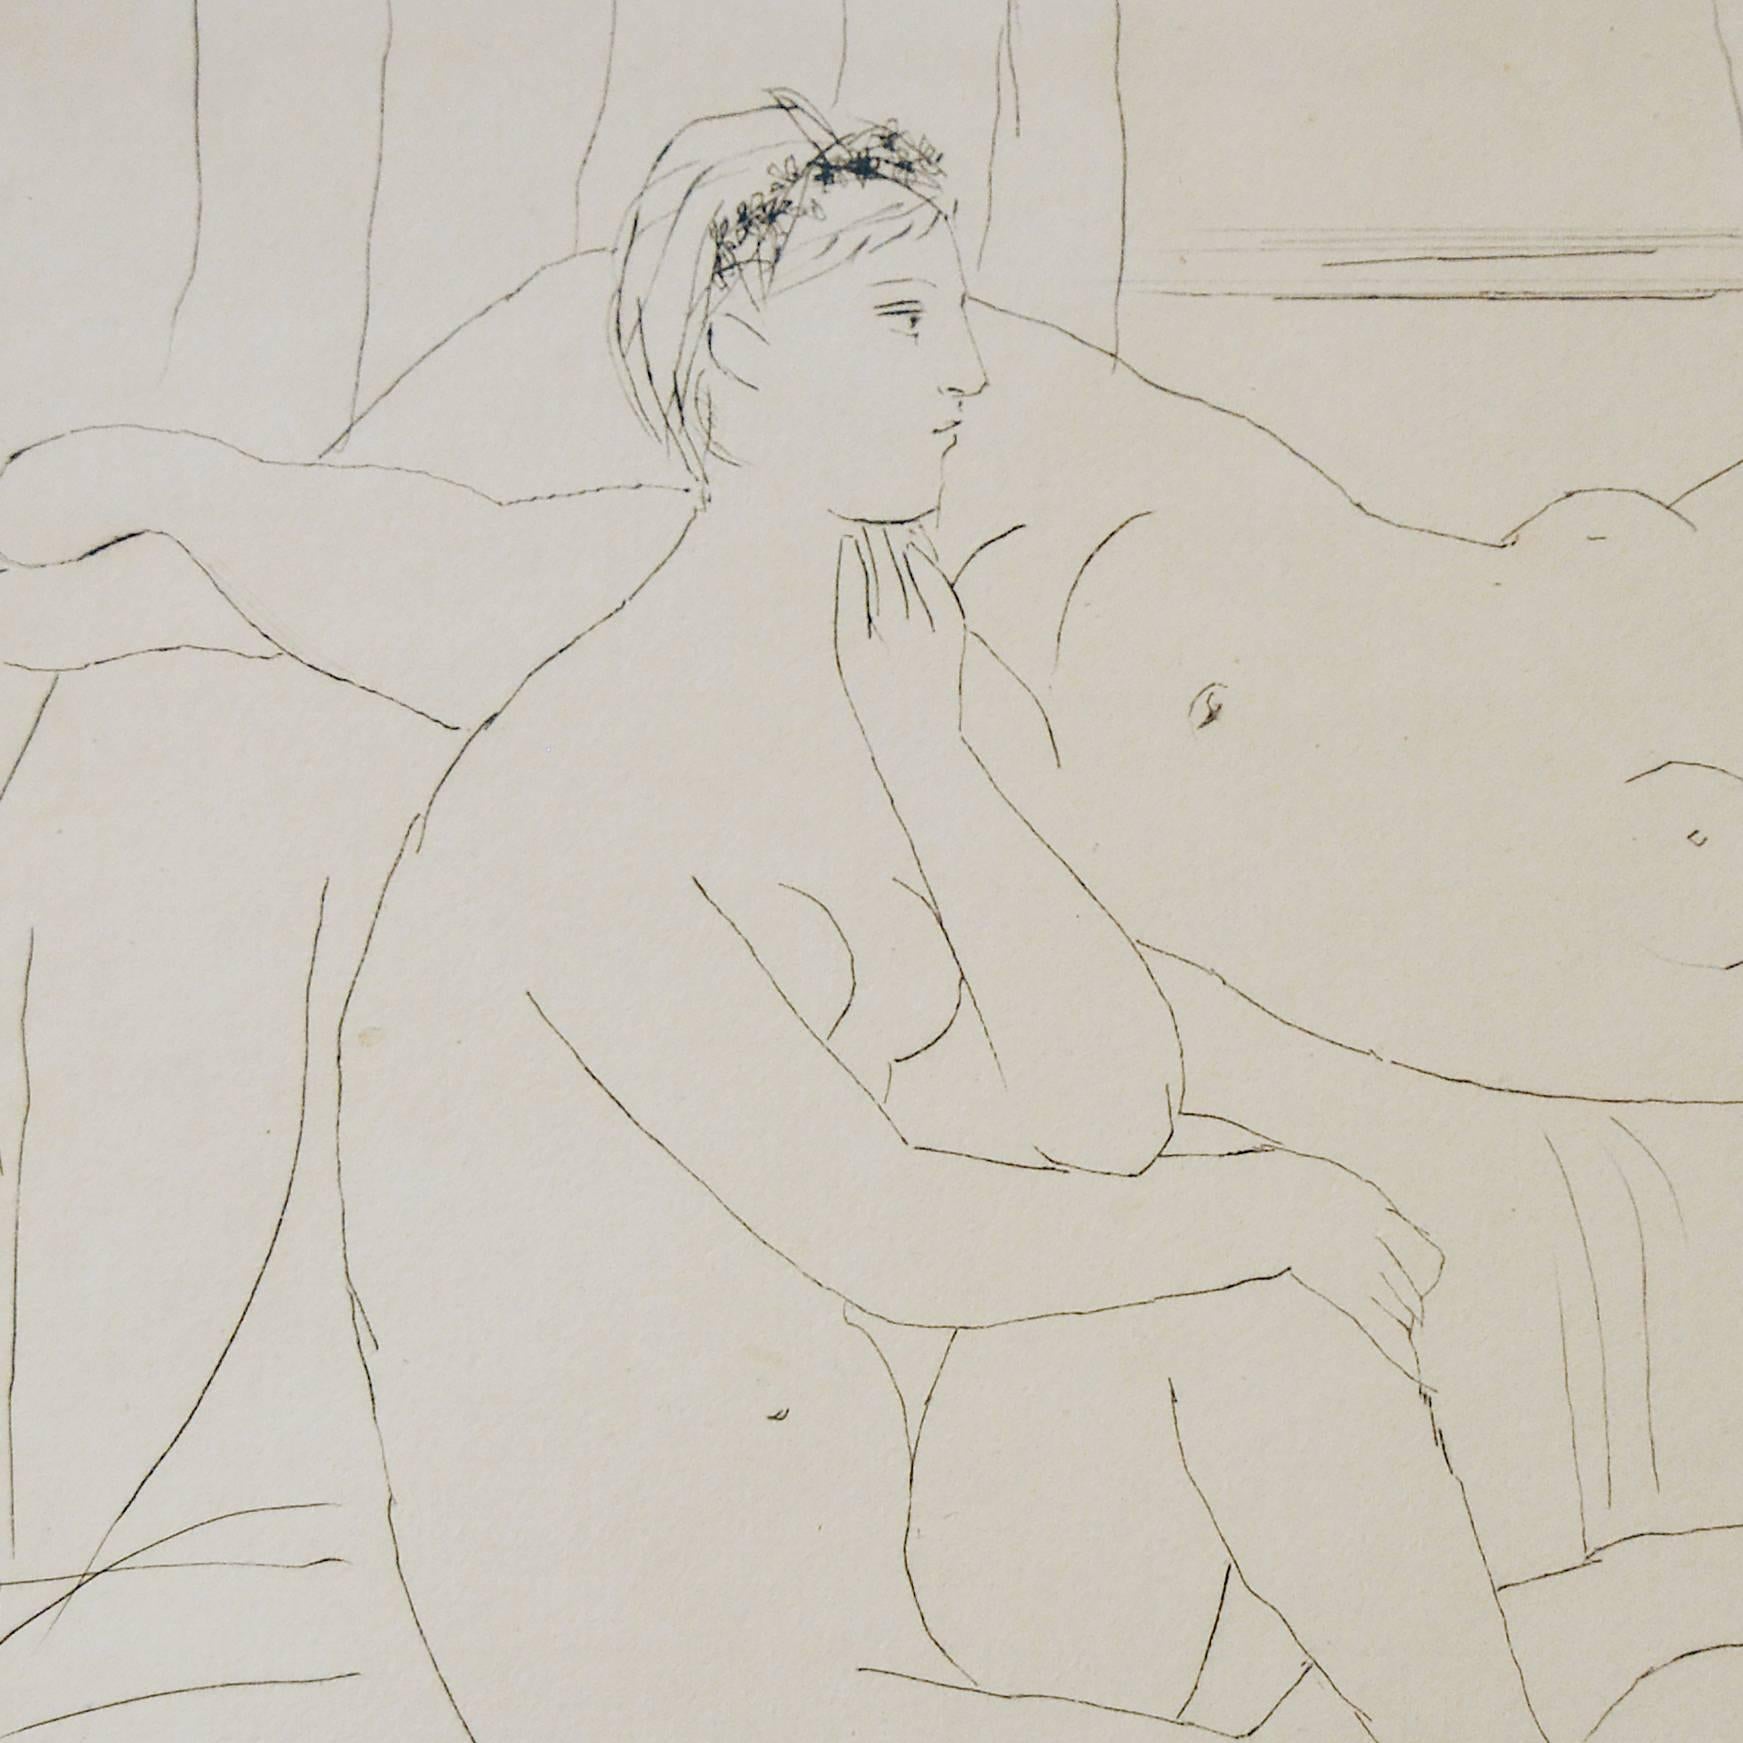 Deux femmes se reposant - Expressionist Painting by Pablo Picasso